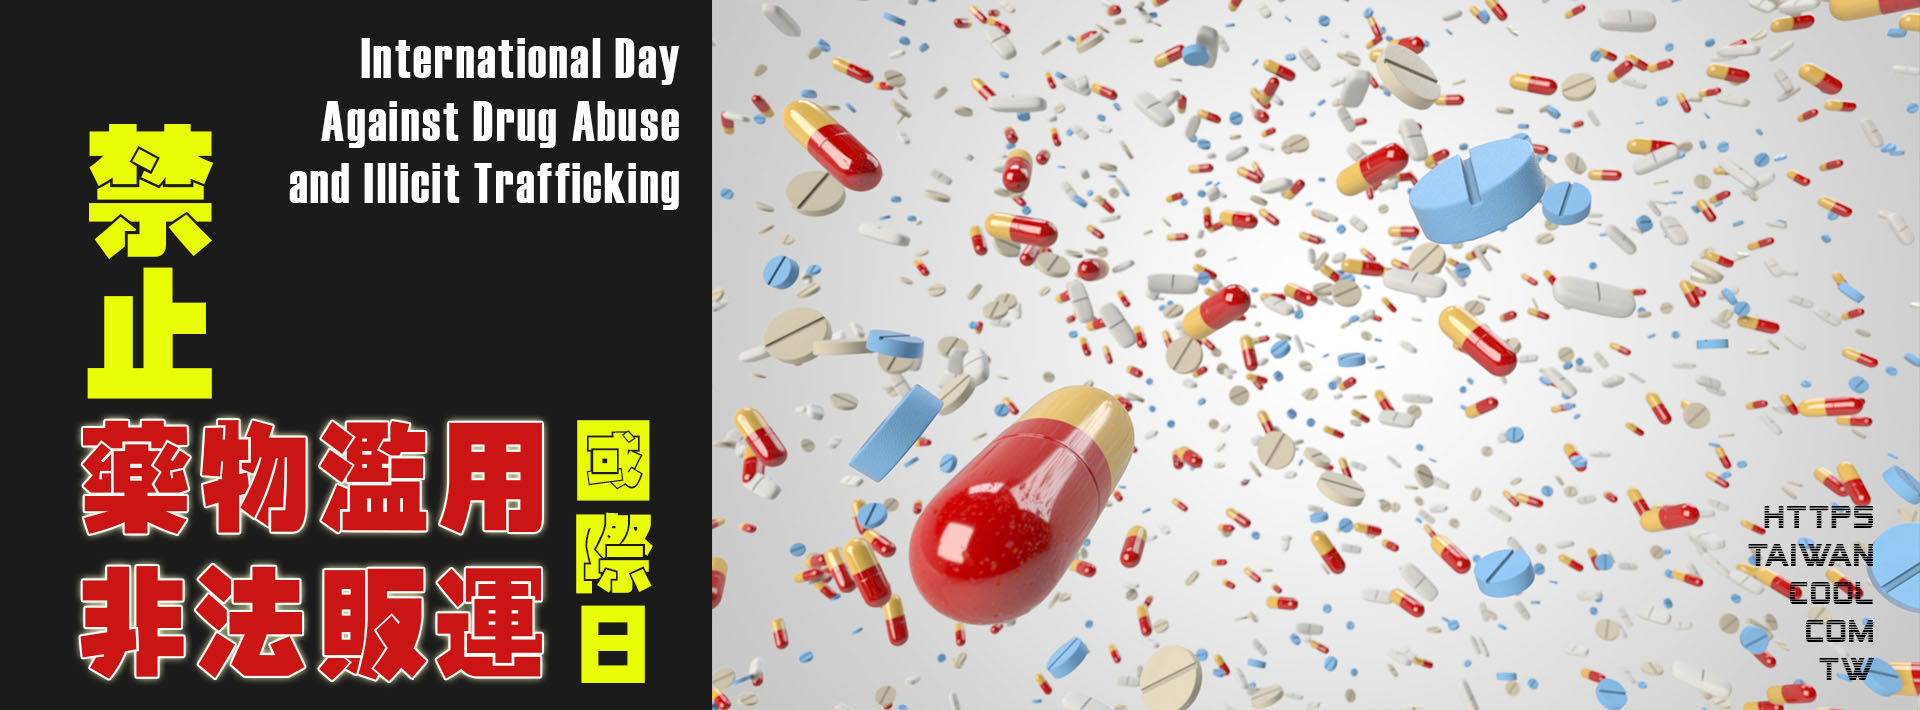 禁止藥物濫用和非法販運國際日